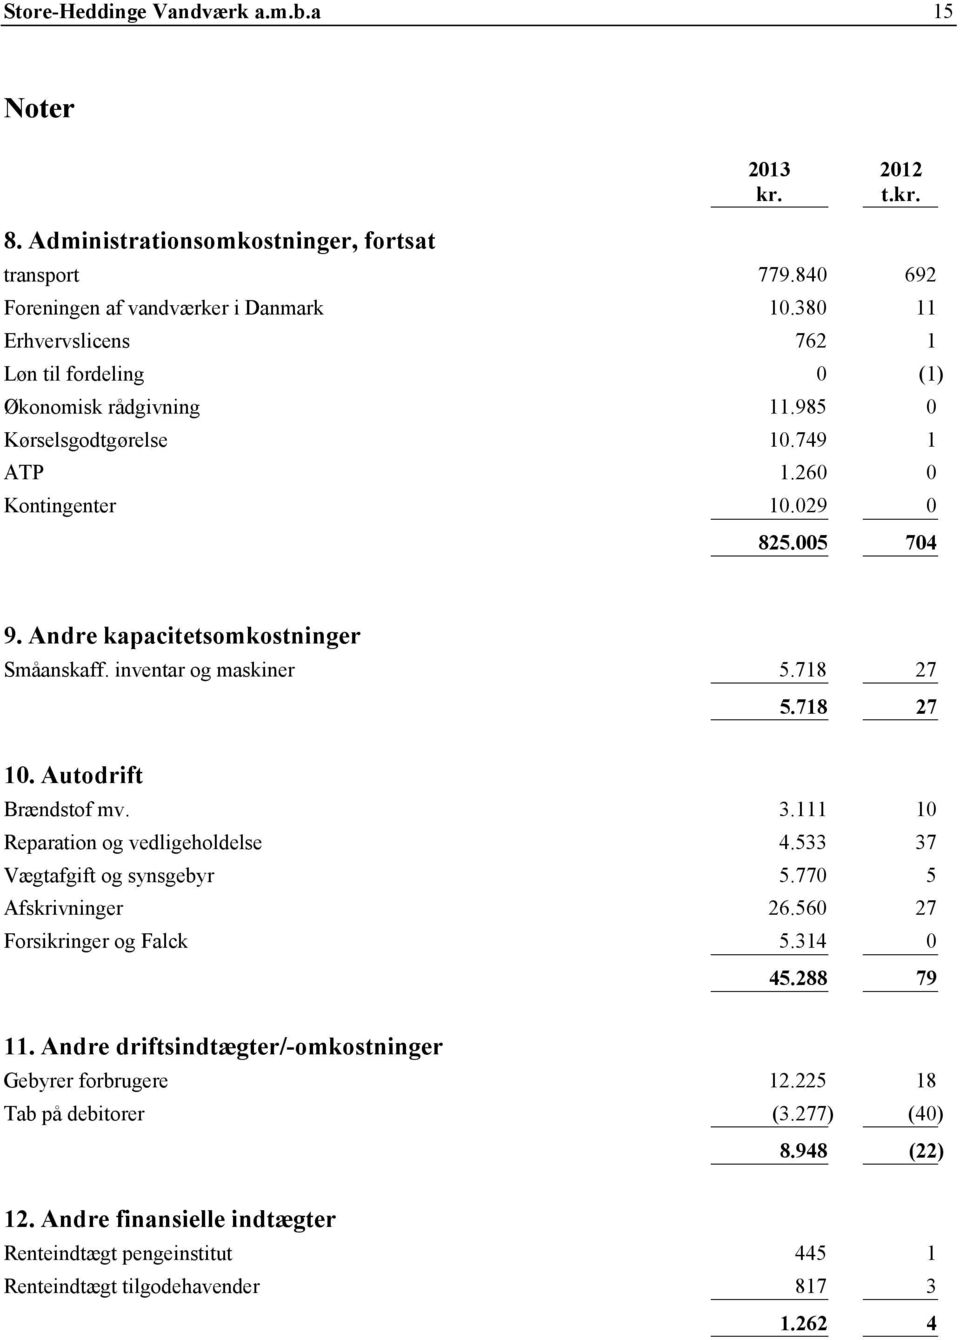 Andre kapacitetsomkostninger Småanskaff. inventar og maskiner 5.718 27 10. Autodrift Brændstof mv. 3.111 10 5.718 27 Reparation og vedligeholdelse 4.533 37 Vægtafgift og synsgebyr 5.